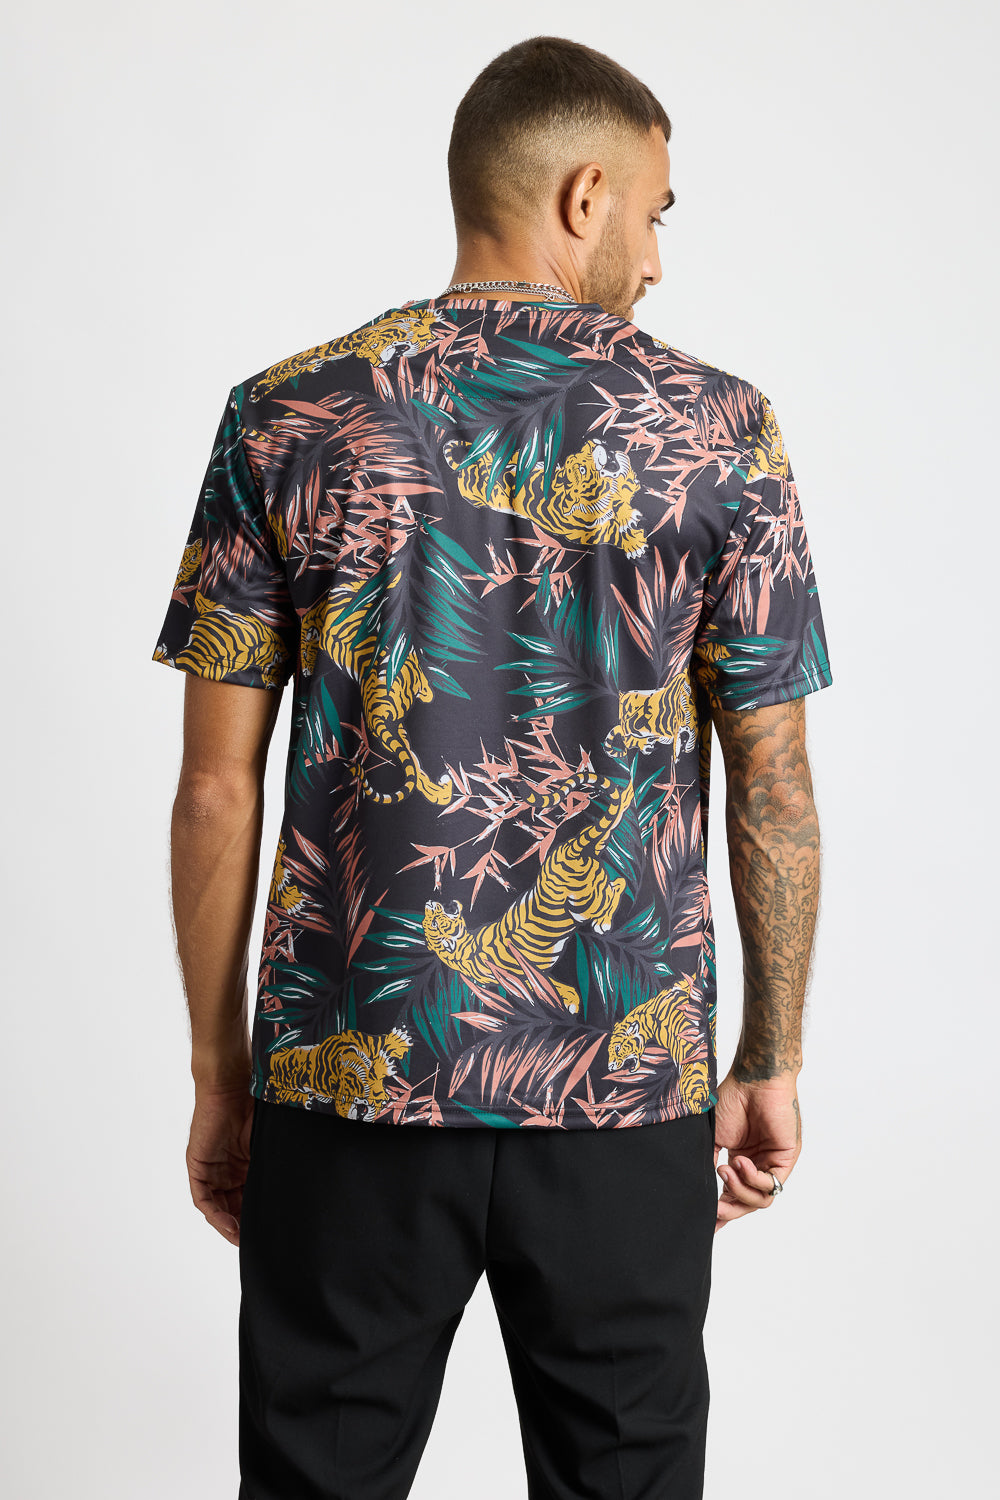 AOP Men's T-shirt - Urban Jungle